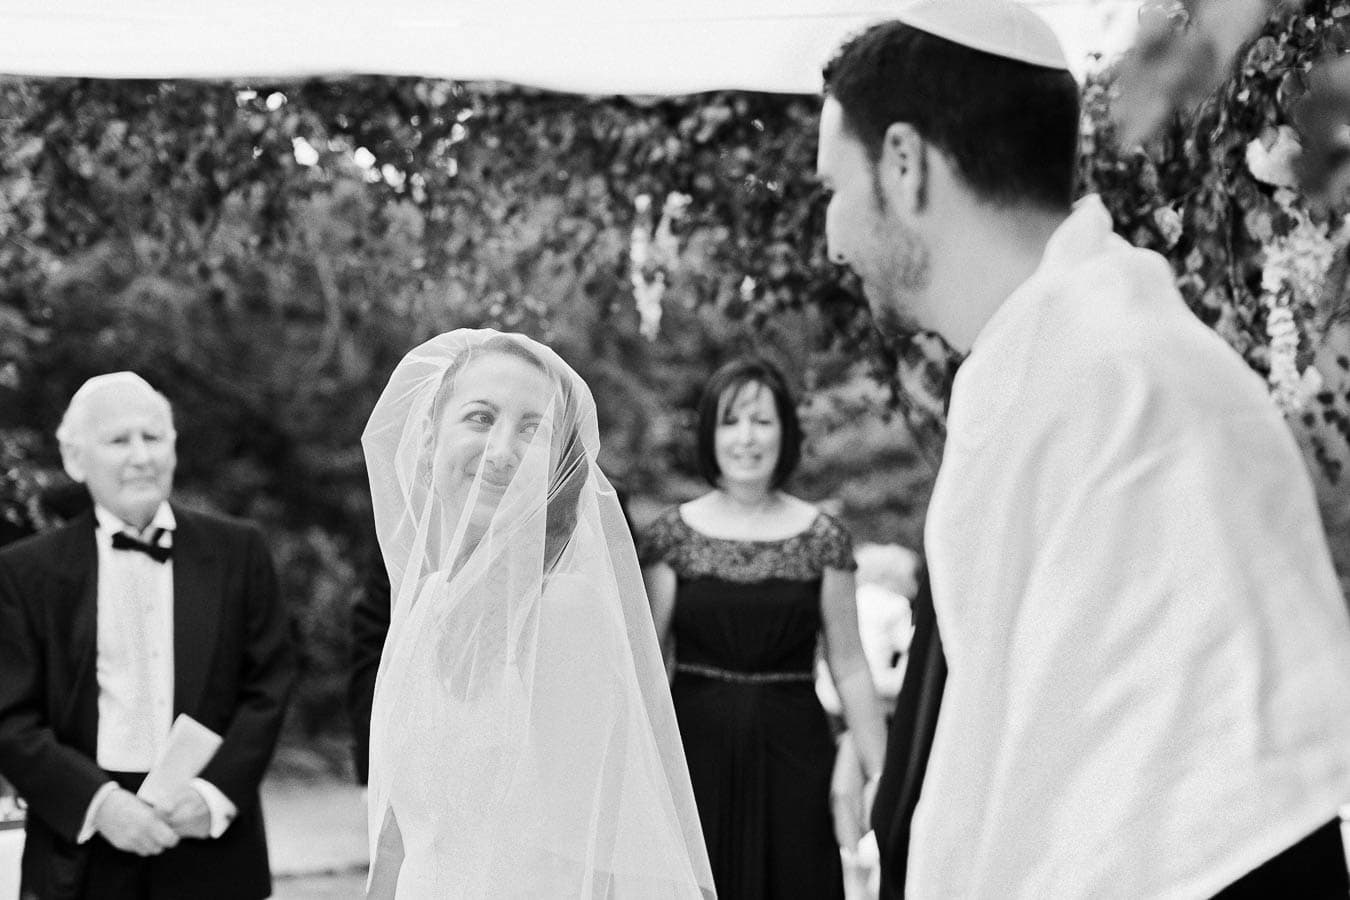 Le-Manoir-Aux-Quat-Saisons-Destination-Wedding-Photographer-Jewish-Wedding